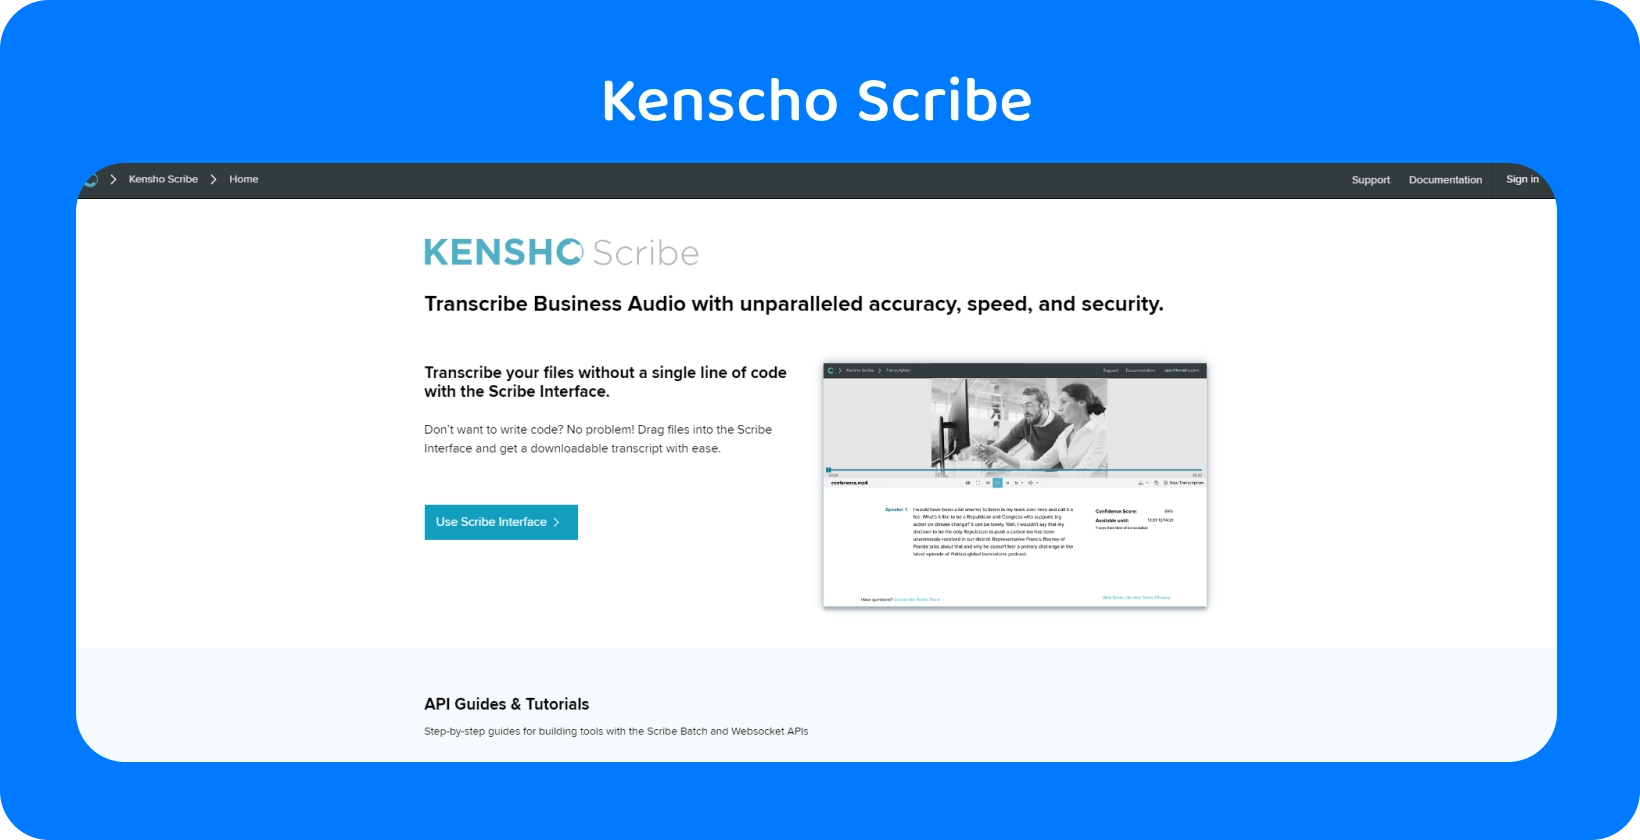 Kensho-websitepagina met 'SOLUTIONS'-tekst, met geavanceerde AI tools die het dictaat van Word aanvullen.